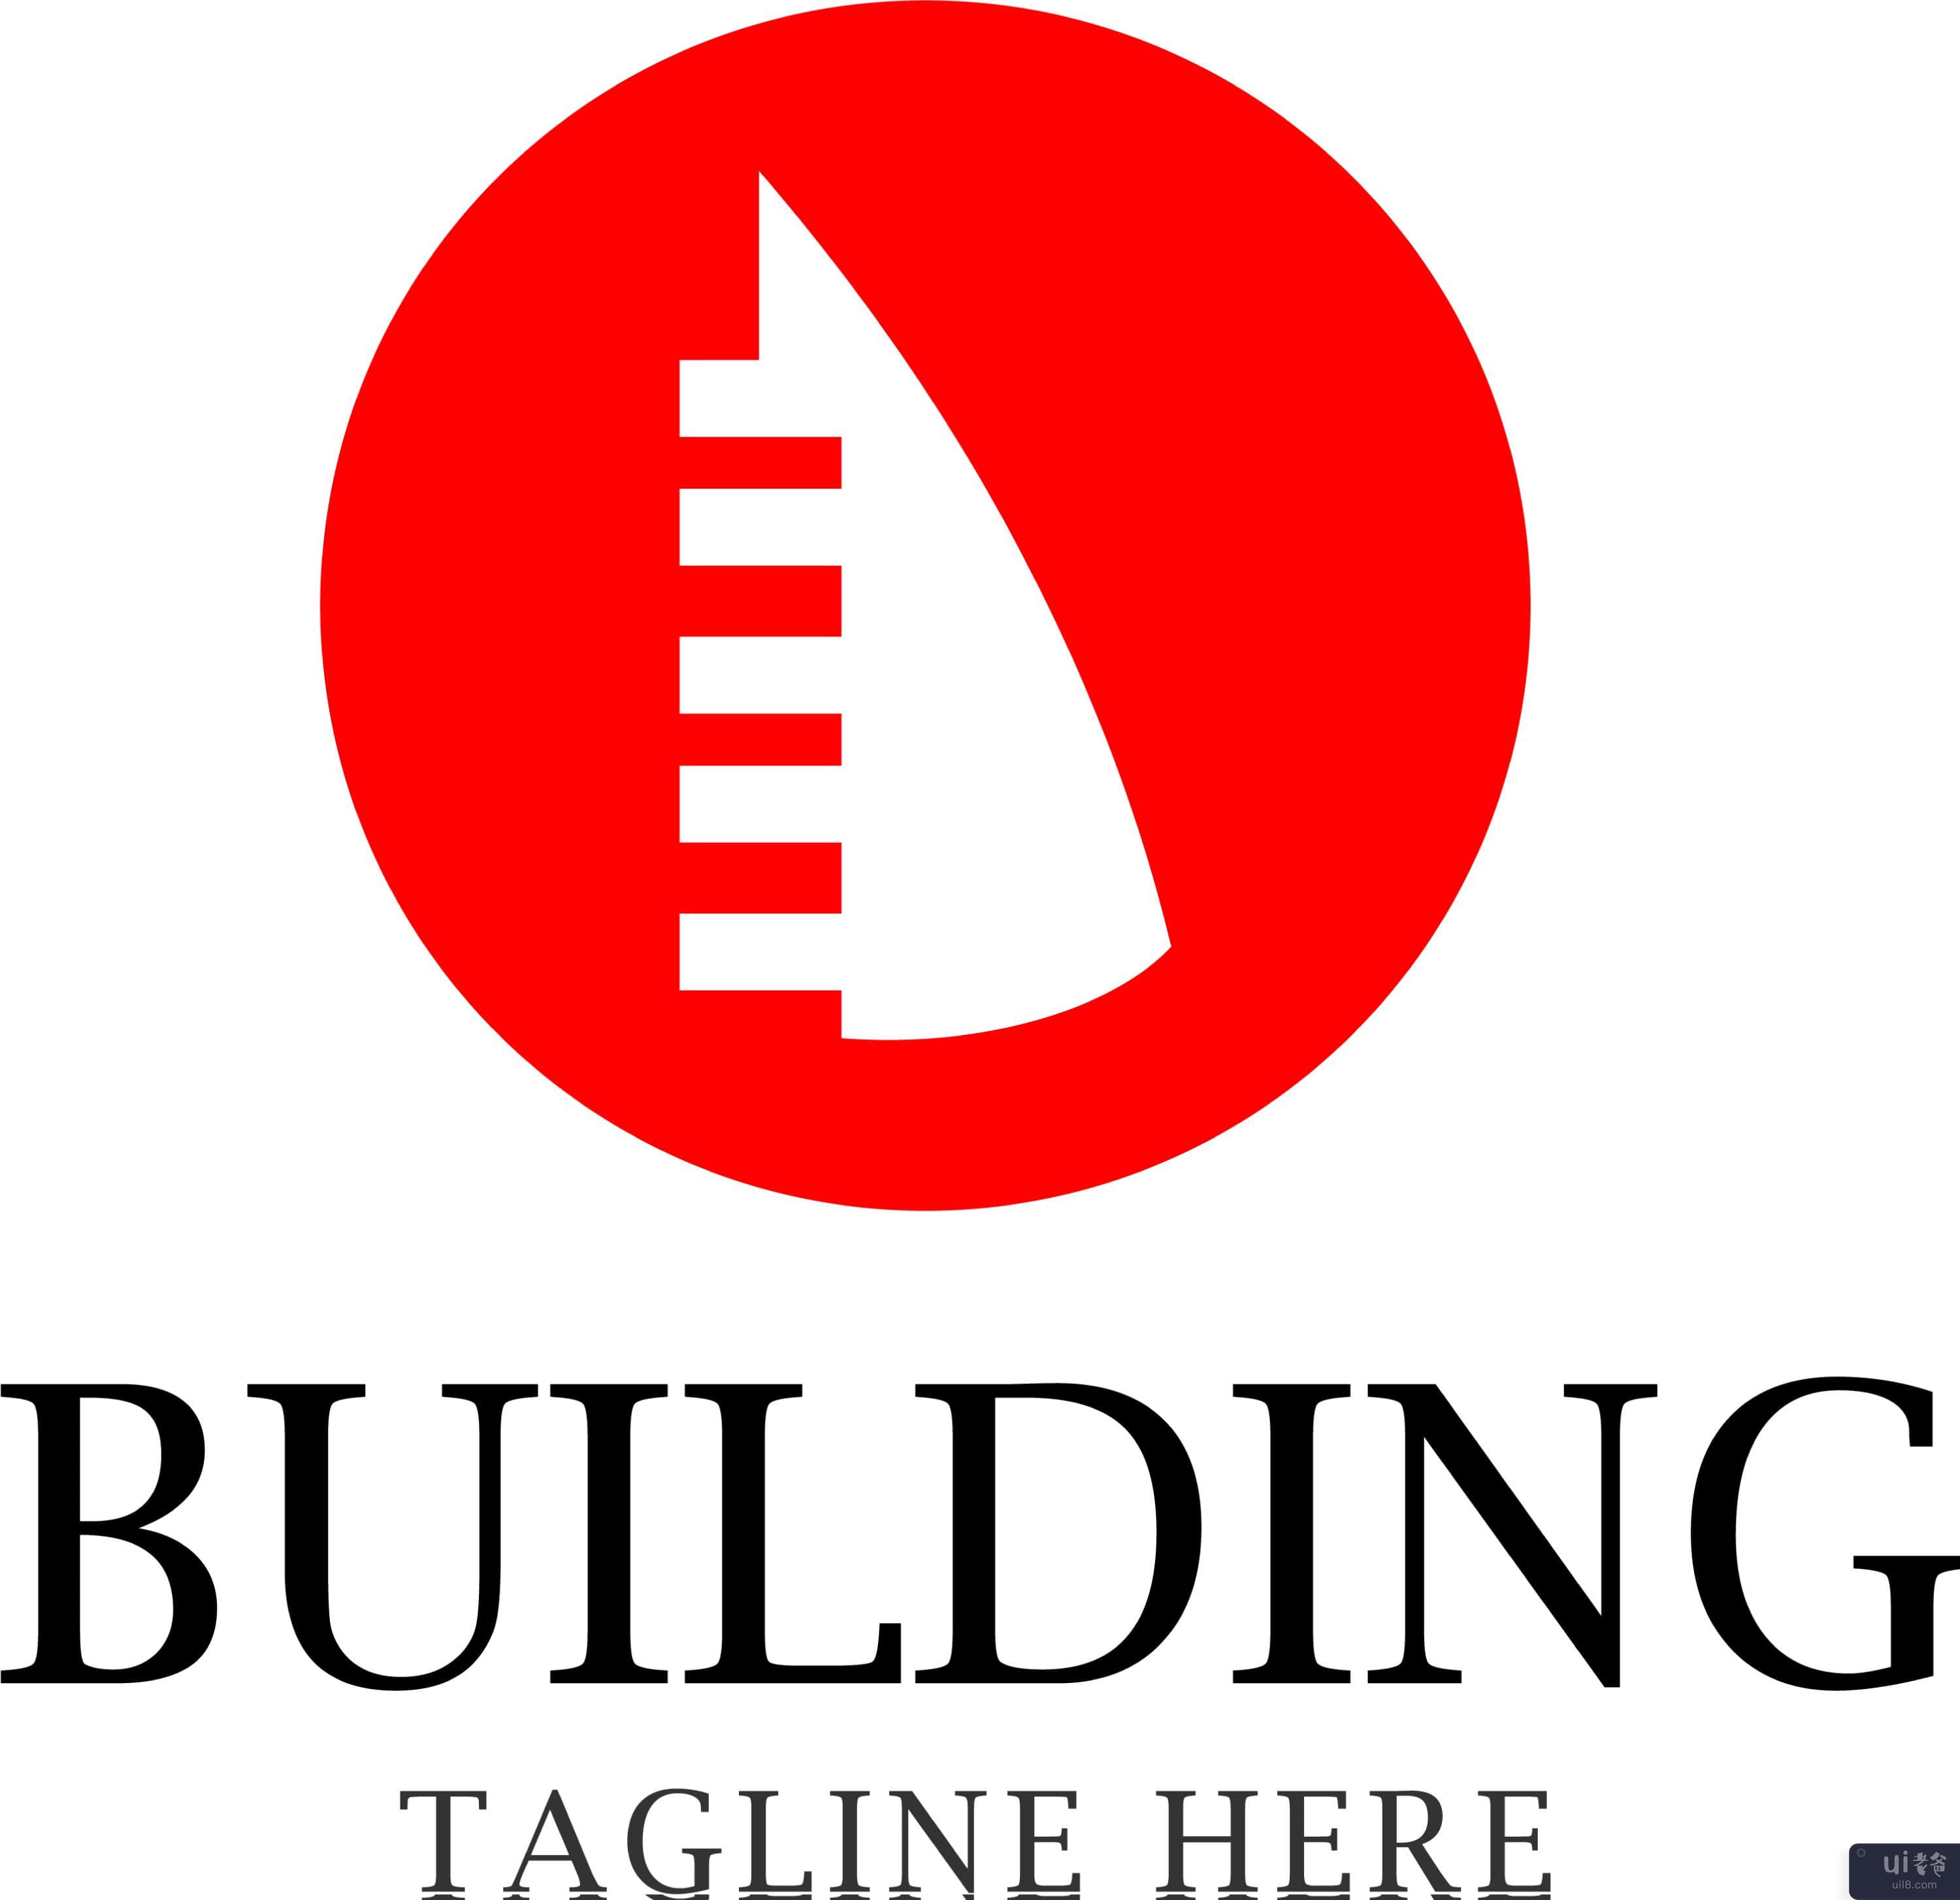 建筑标志模板(Building logo template)插图